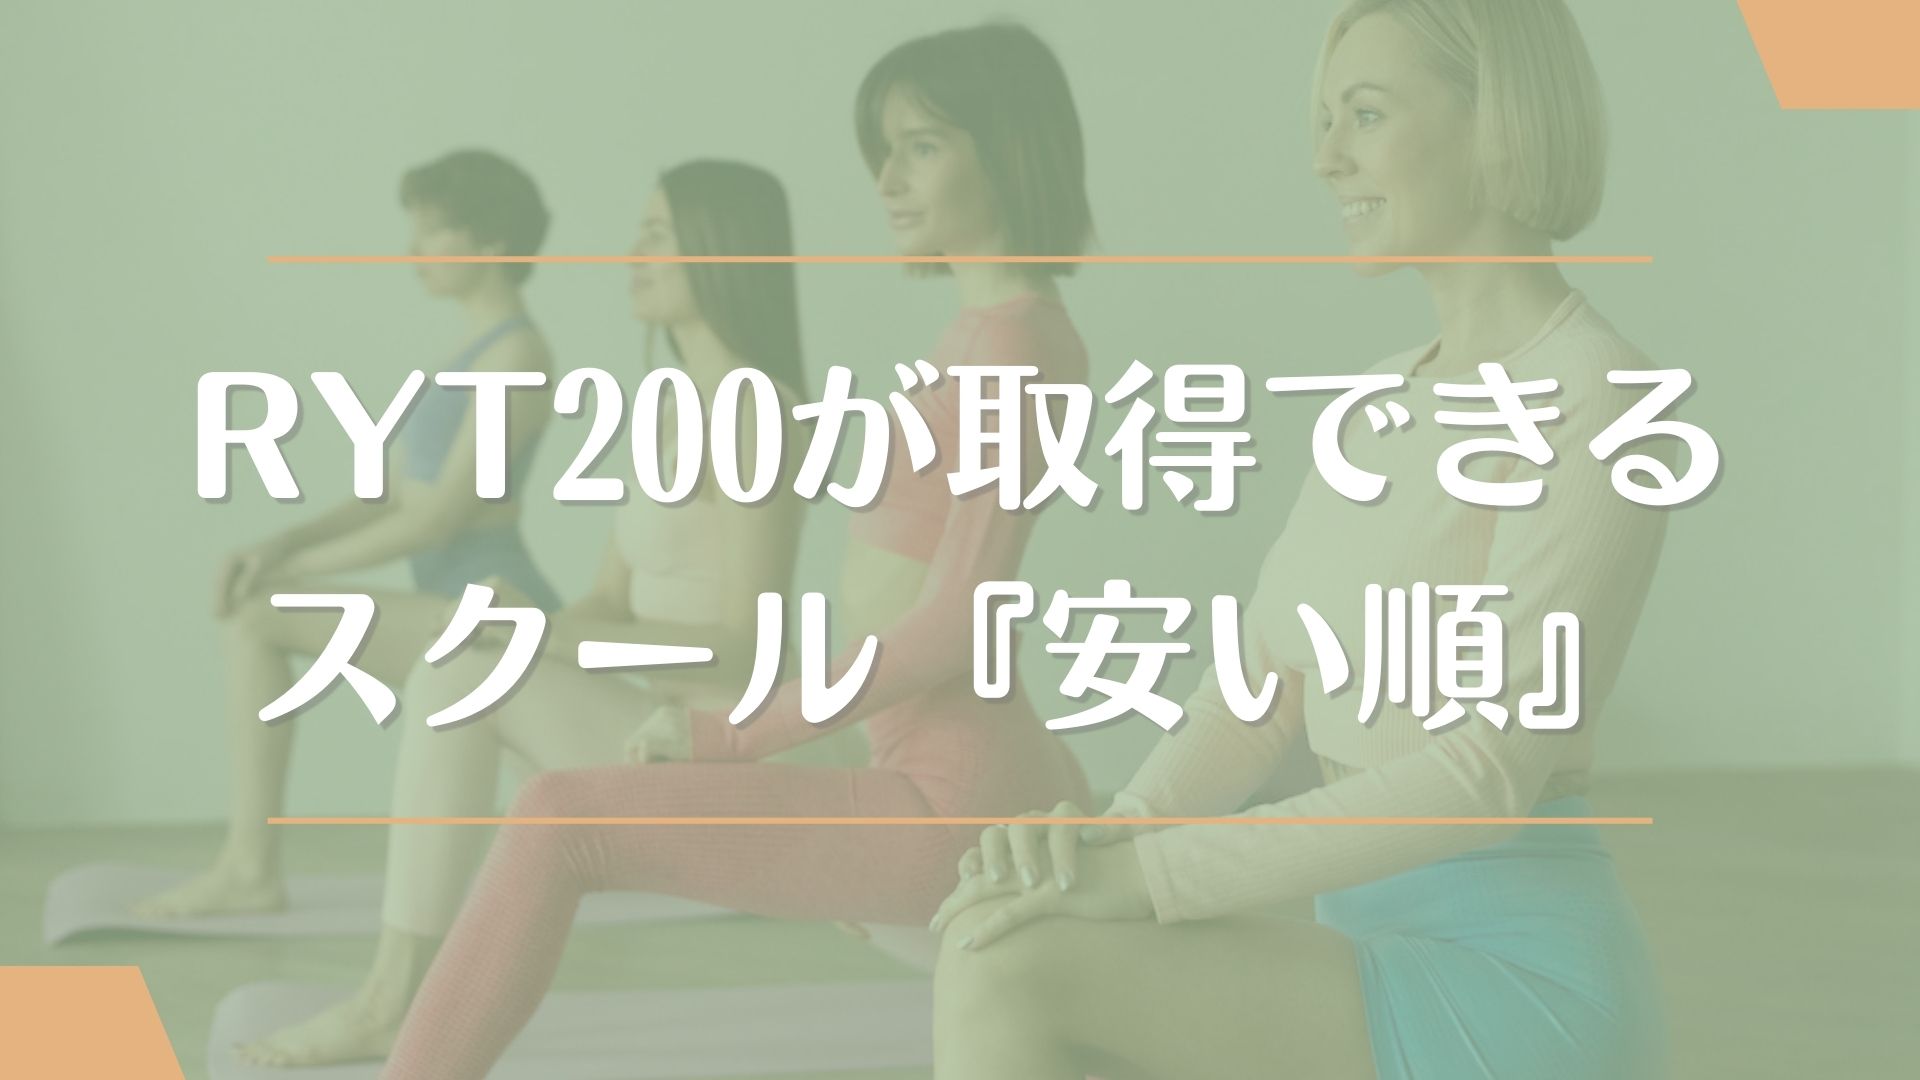 その他のRYT200が取得できる大阪のおすすめスクール4校【安い料金順】